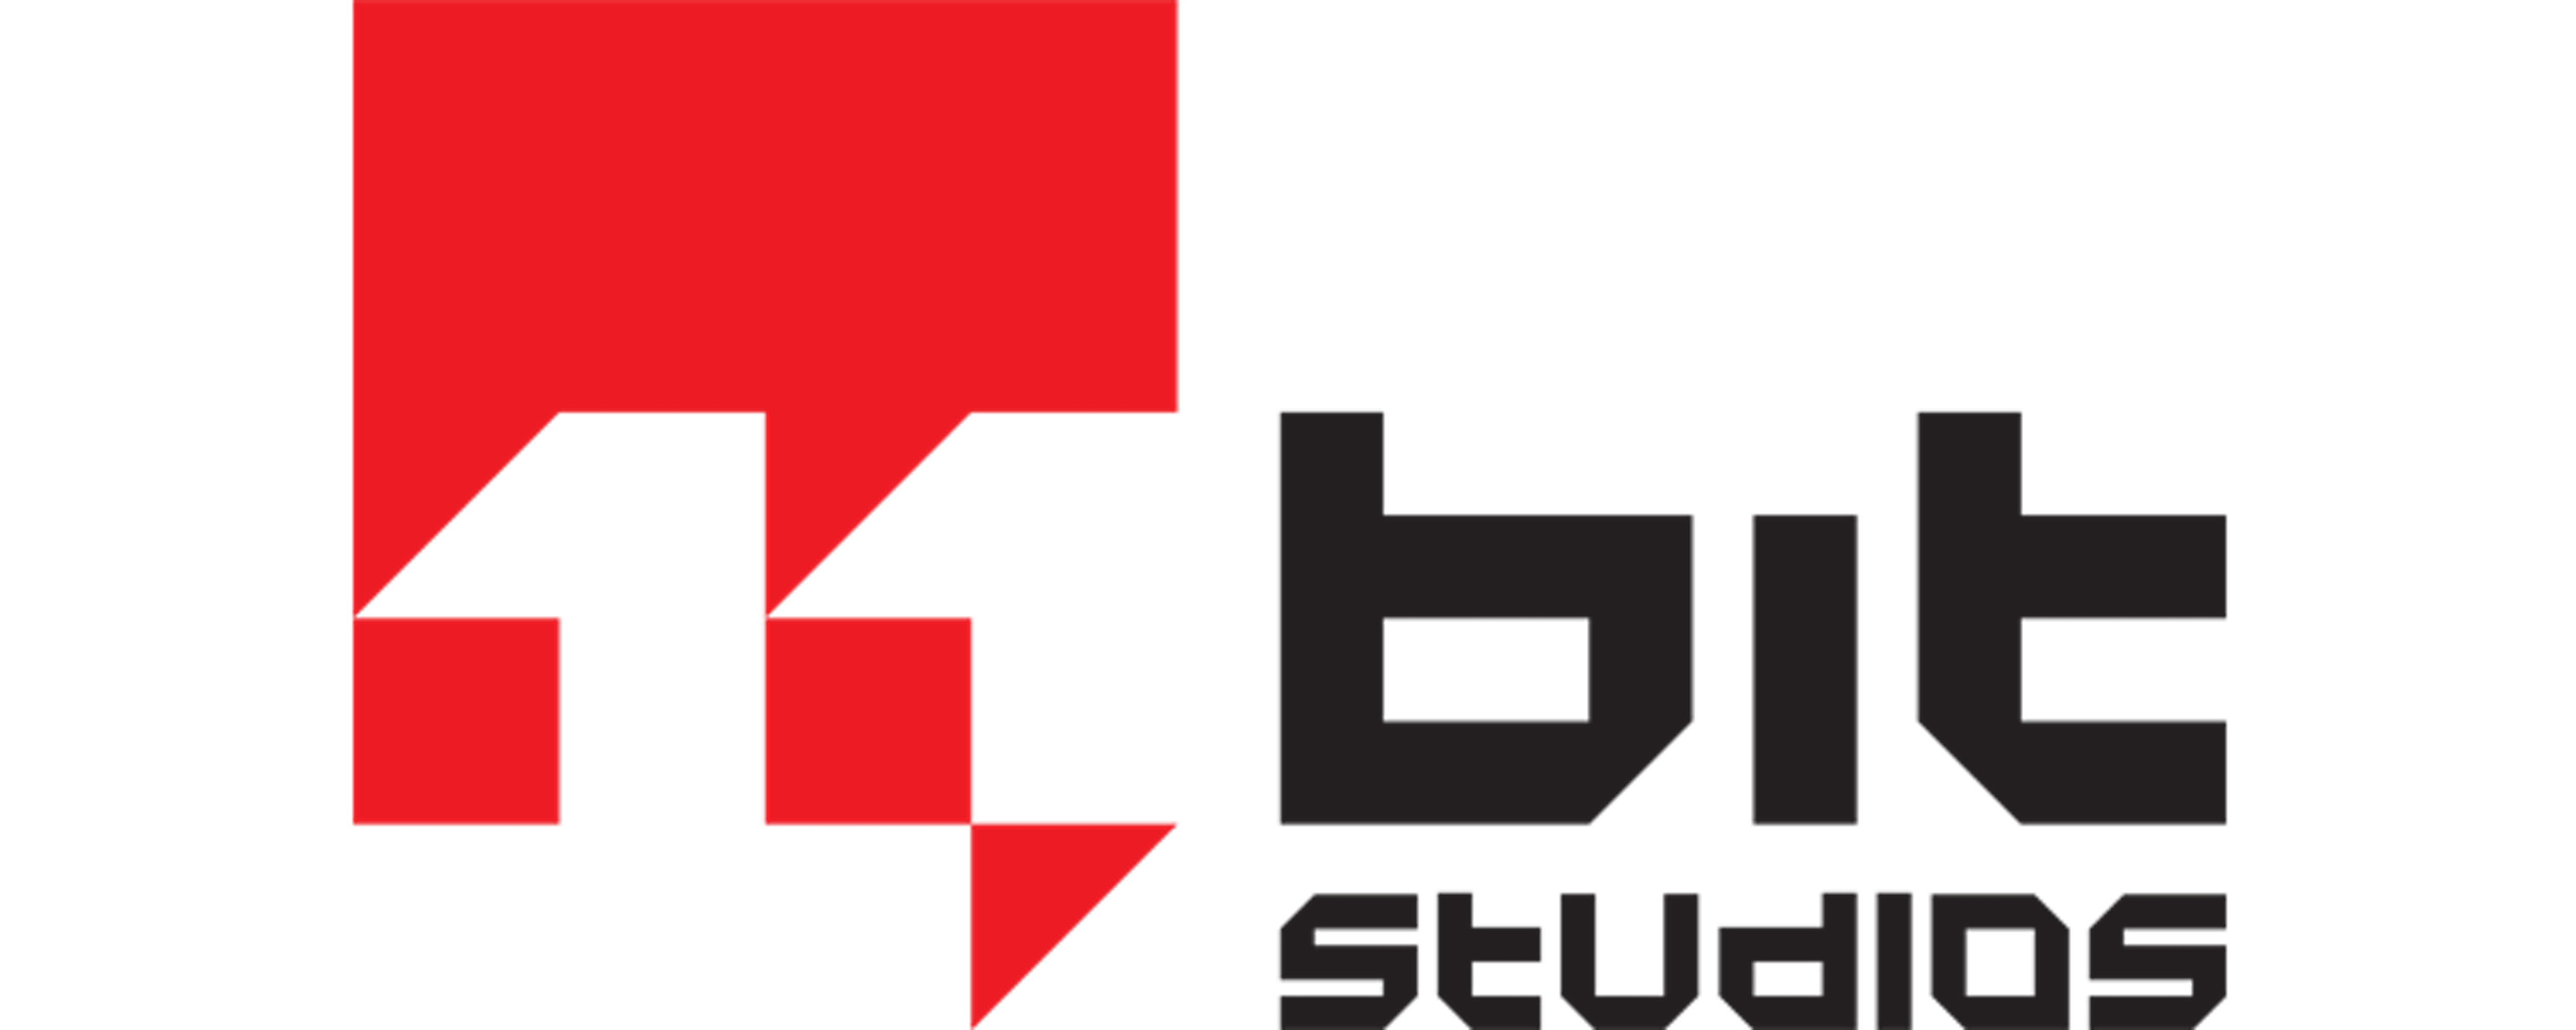 11 Bit Studios.png